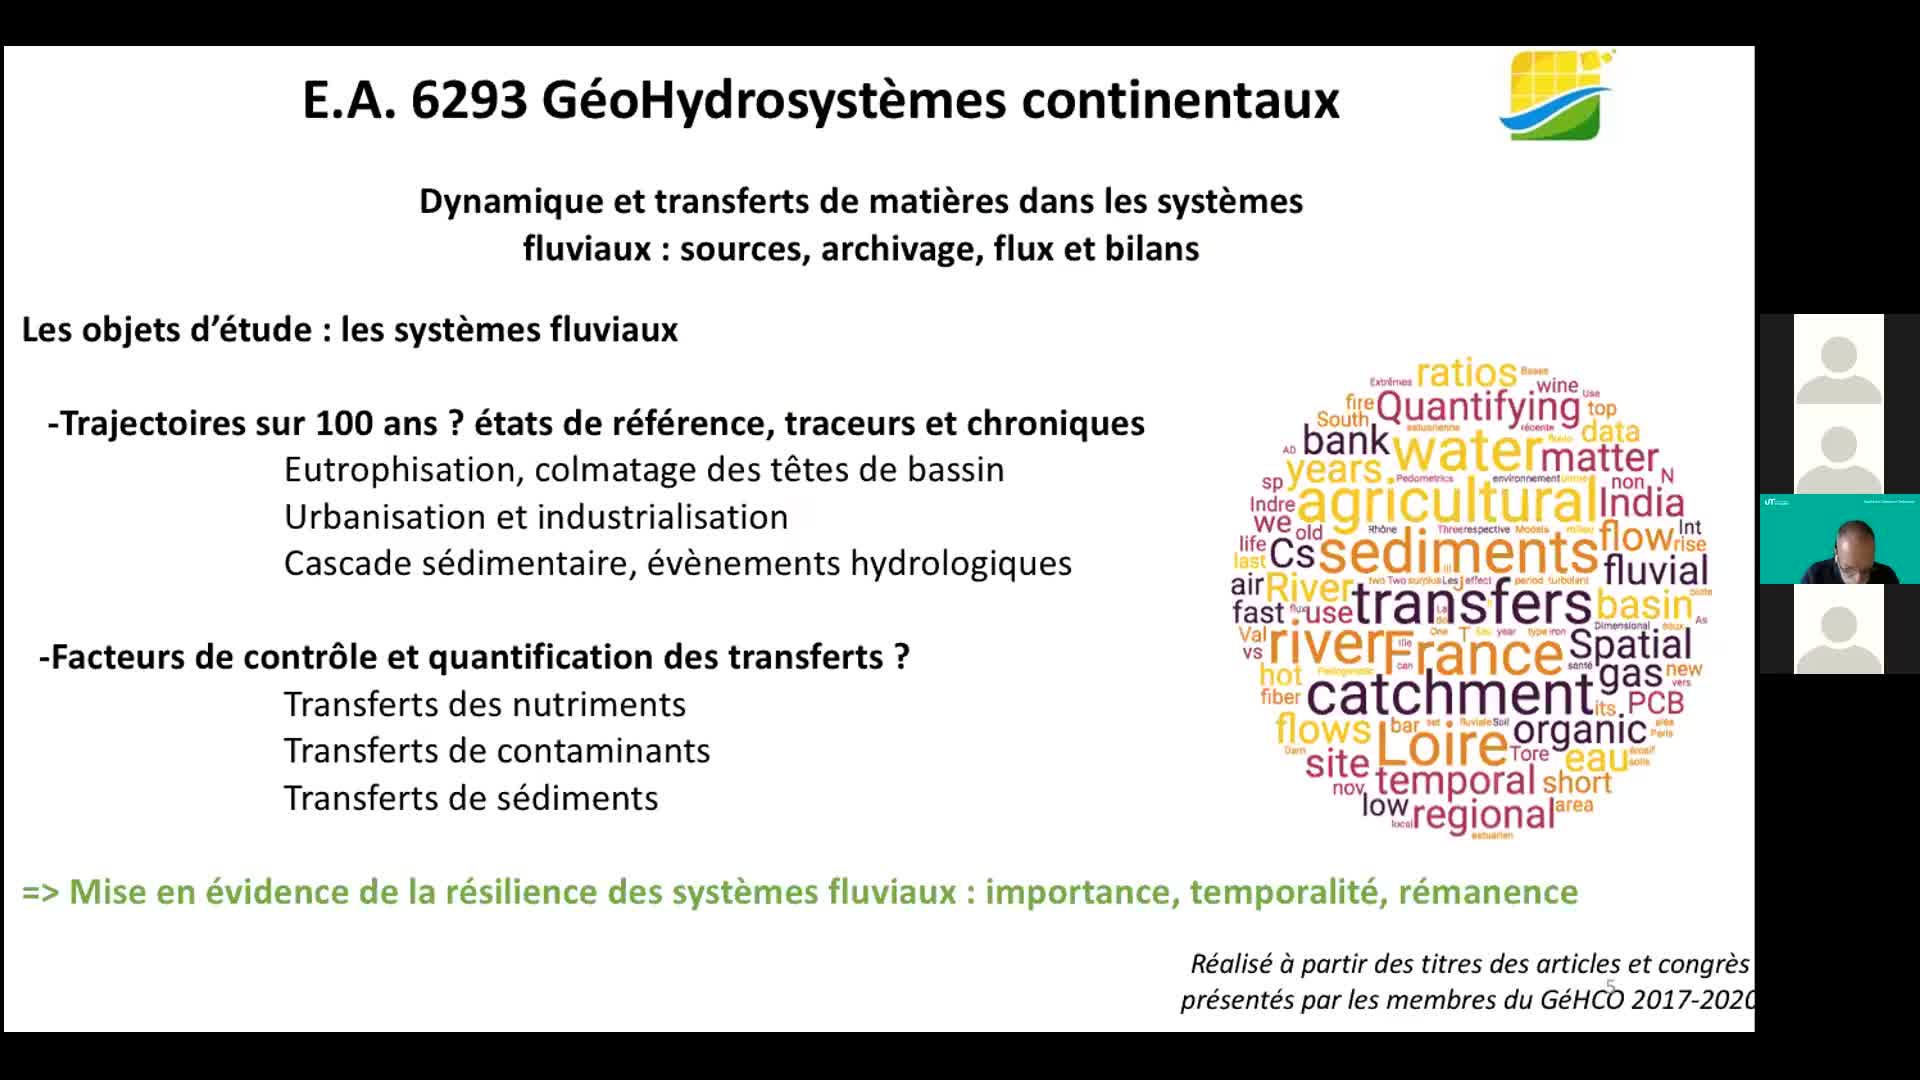 Cécile Grosbois : Présentation de l’U.R. 6293 GéoHydrosystèmes continentaux (GéHCO)